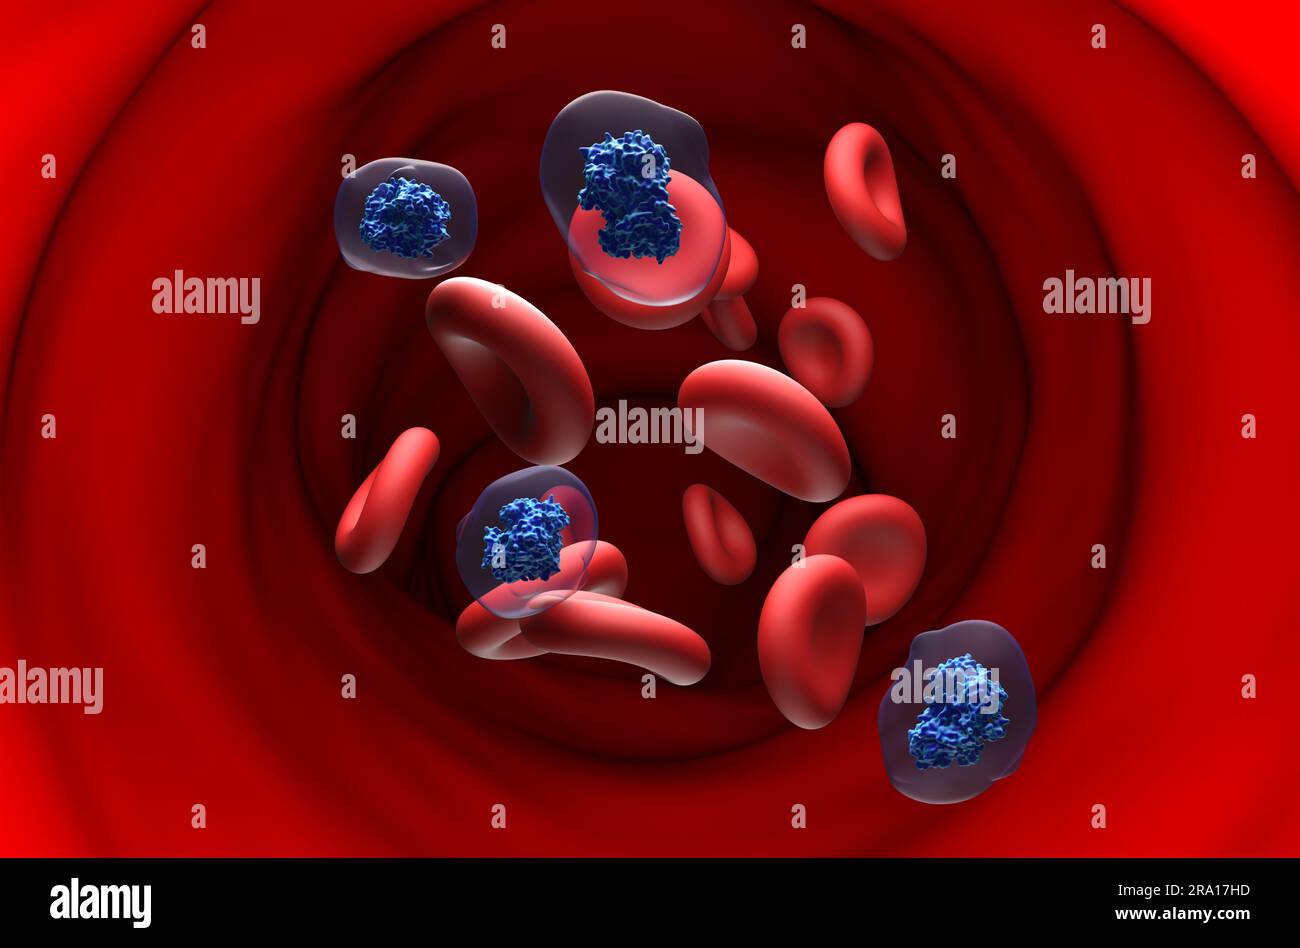 Aspirina molecola di acido acetilsalicilico (ASA) nel flusso sanguigno - vista in sezione illustrazione 3d. Foto Stock